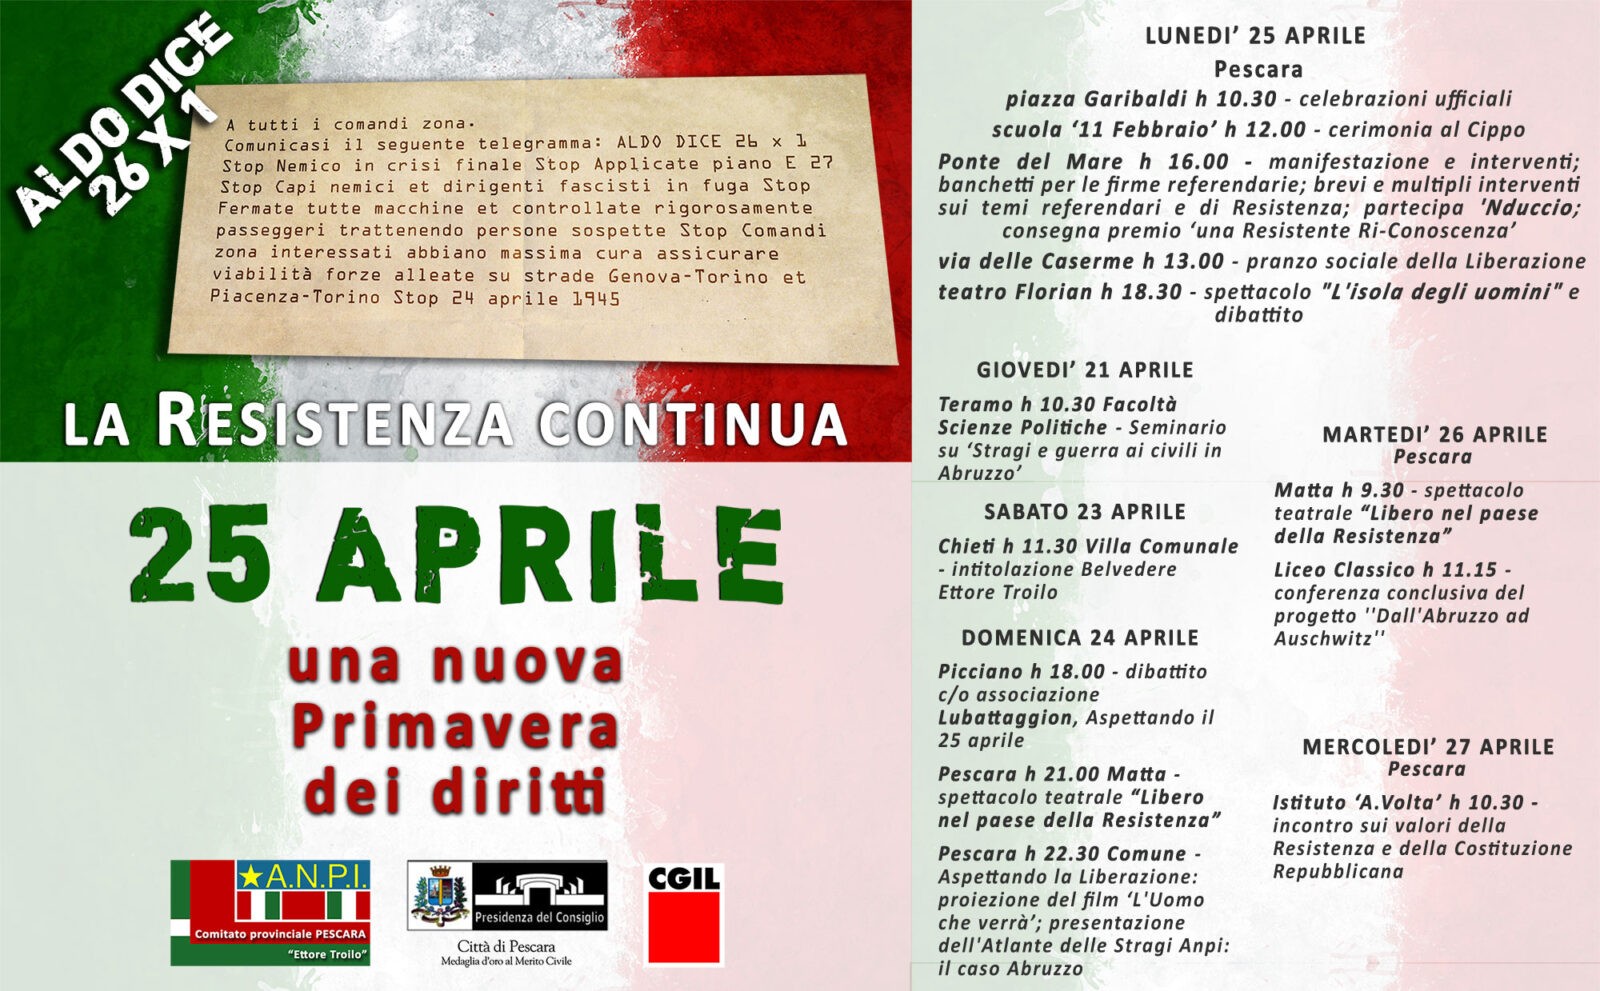 25 aprile Pescara, tante le iniziative: domani conferenza stampa